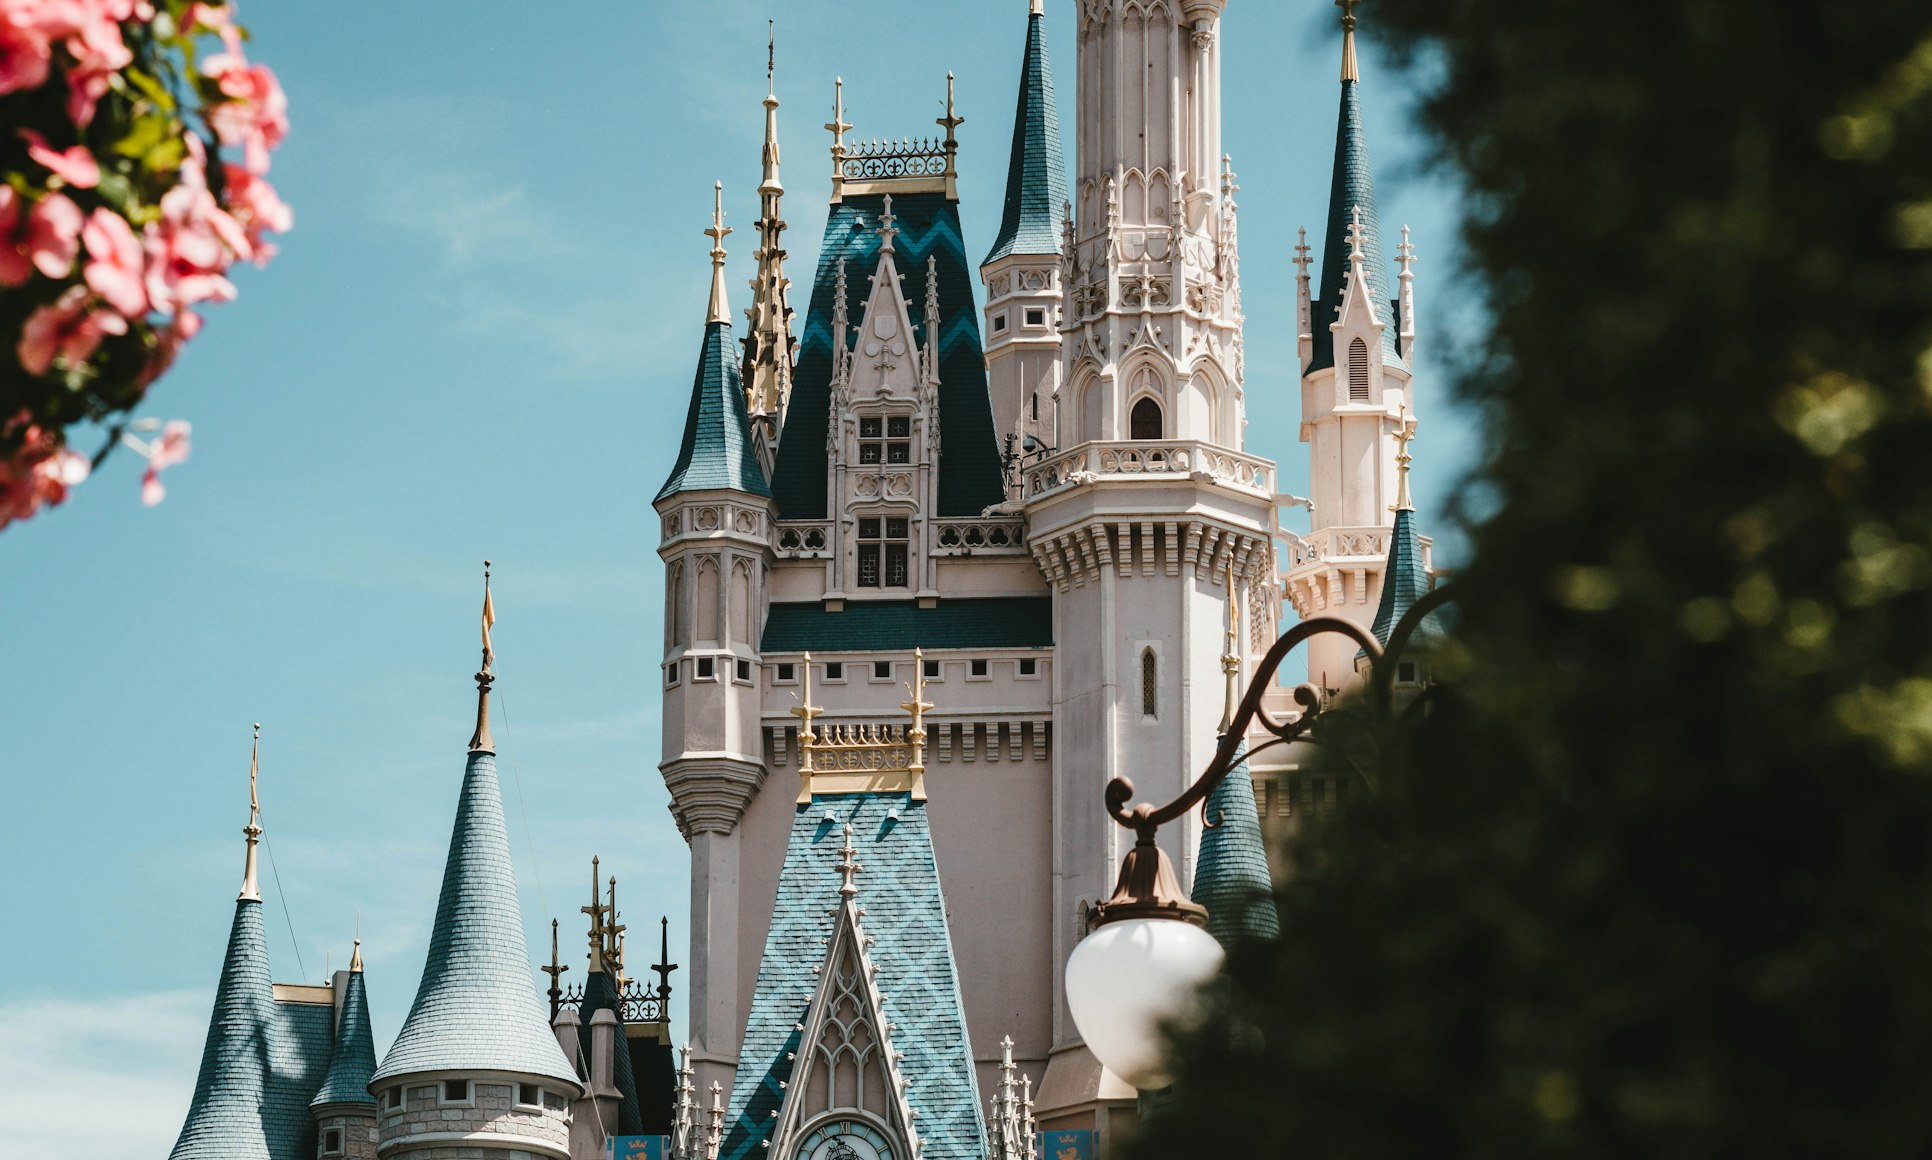 The Disneyland castle